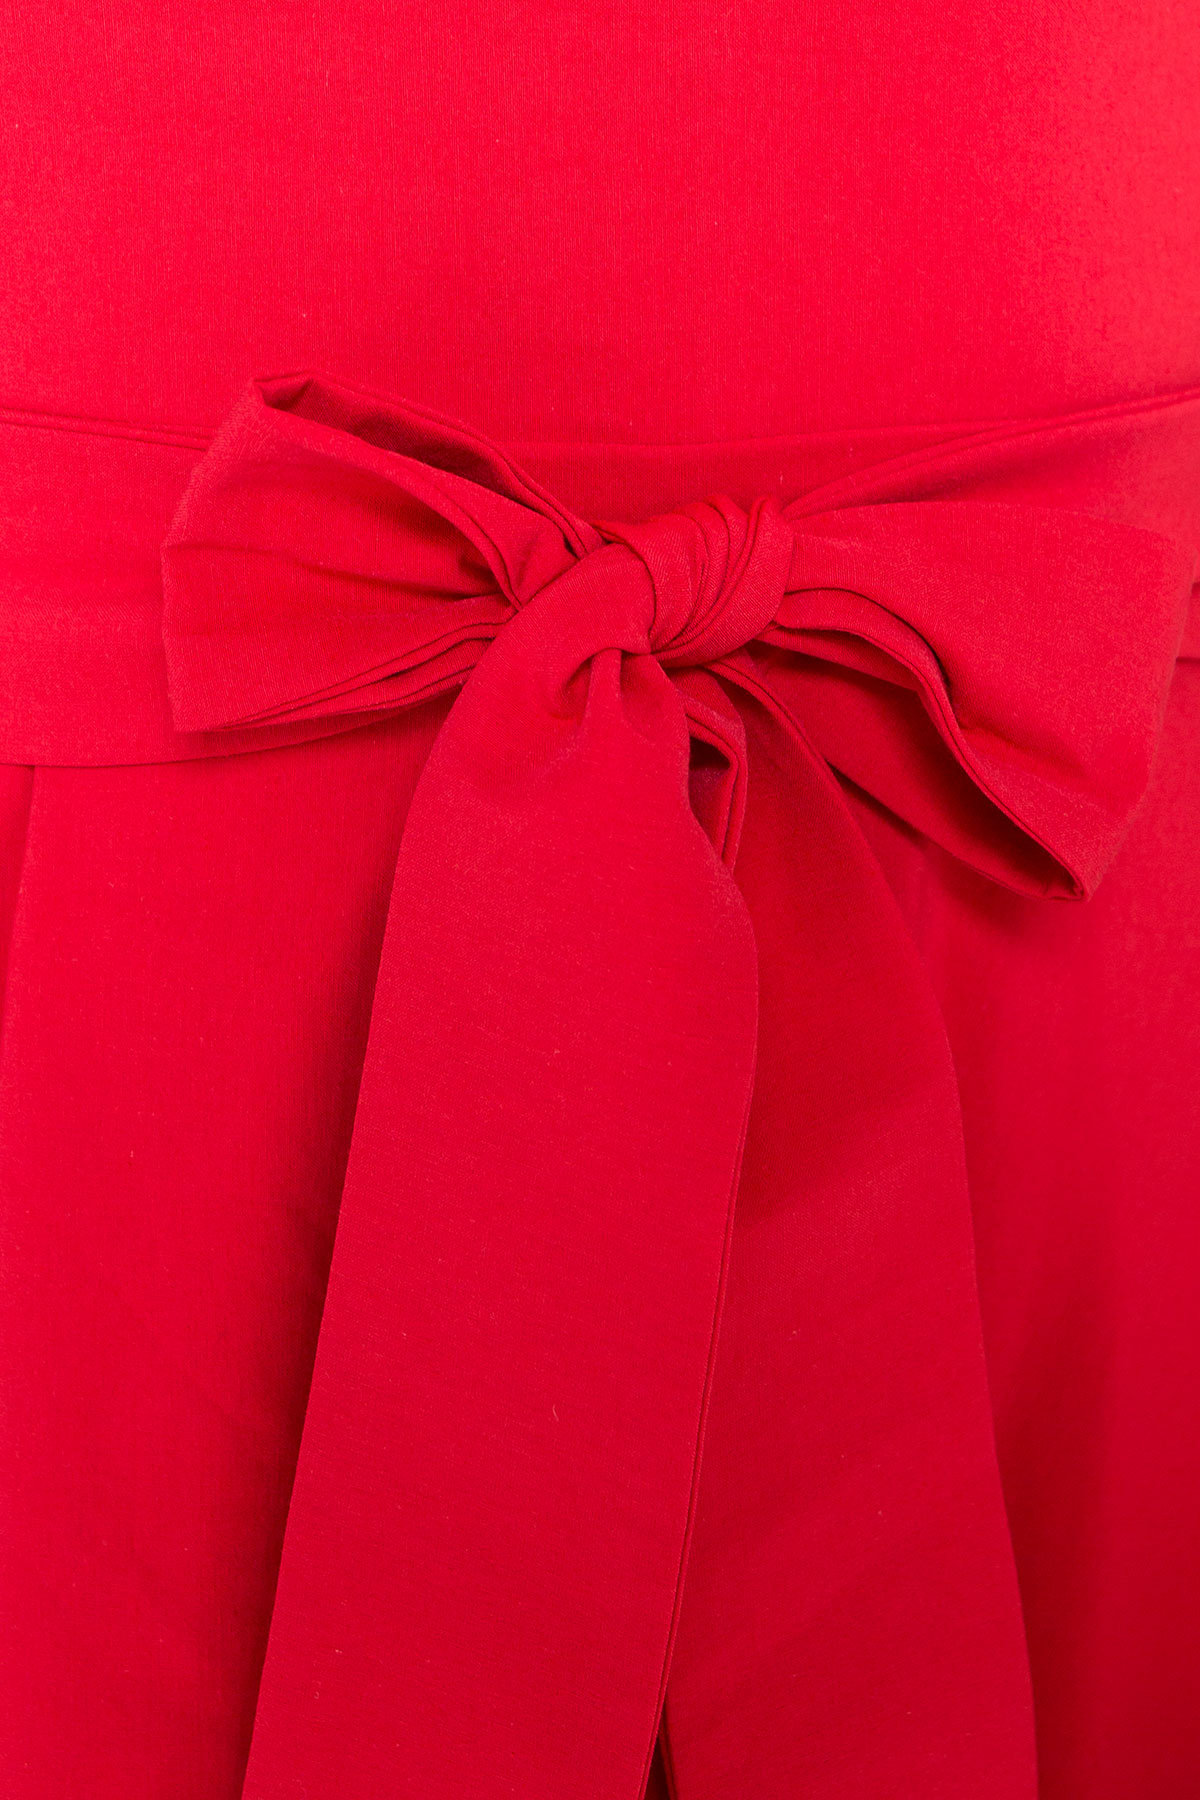 Платье Жадор 5125 АРТ. 35980 Цвет: Красный - фото 4, интернет магазин tm-modus.ru